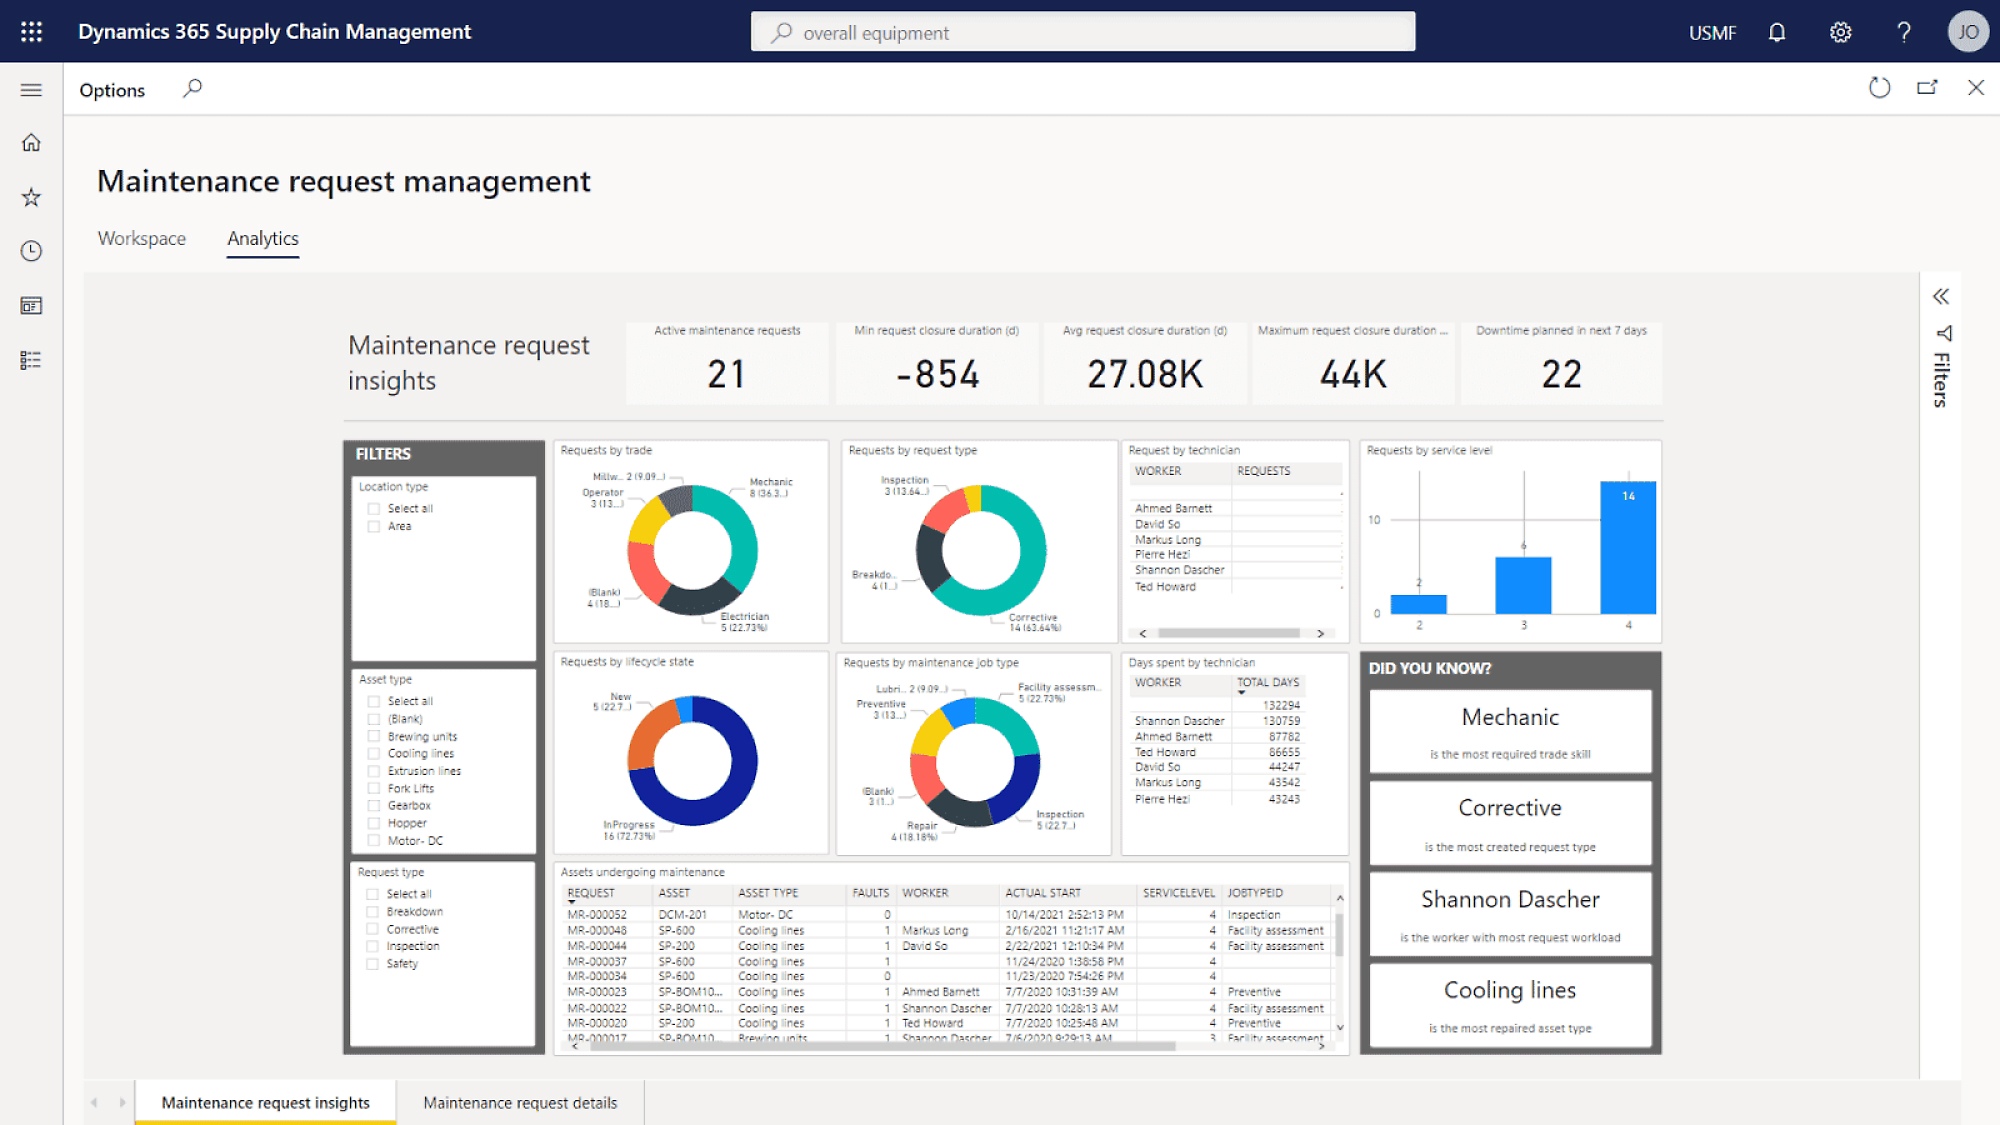 Et skærmbillede af Microsoft Business Intelligence-dashboardet med forskellige diagrammer og statistikker.